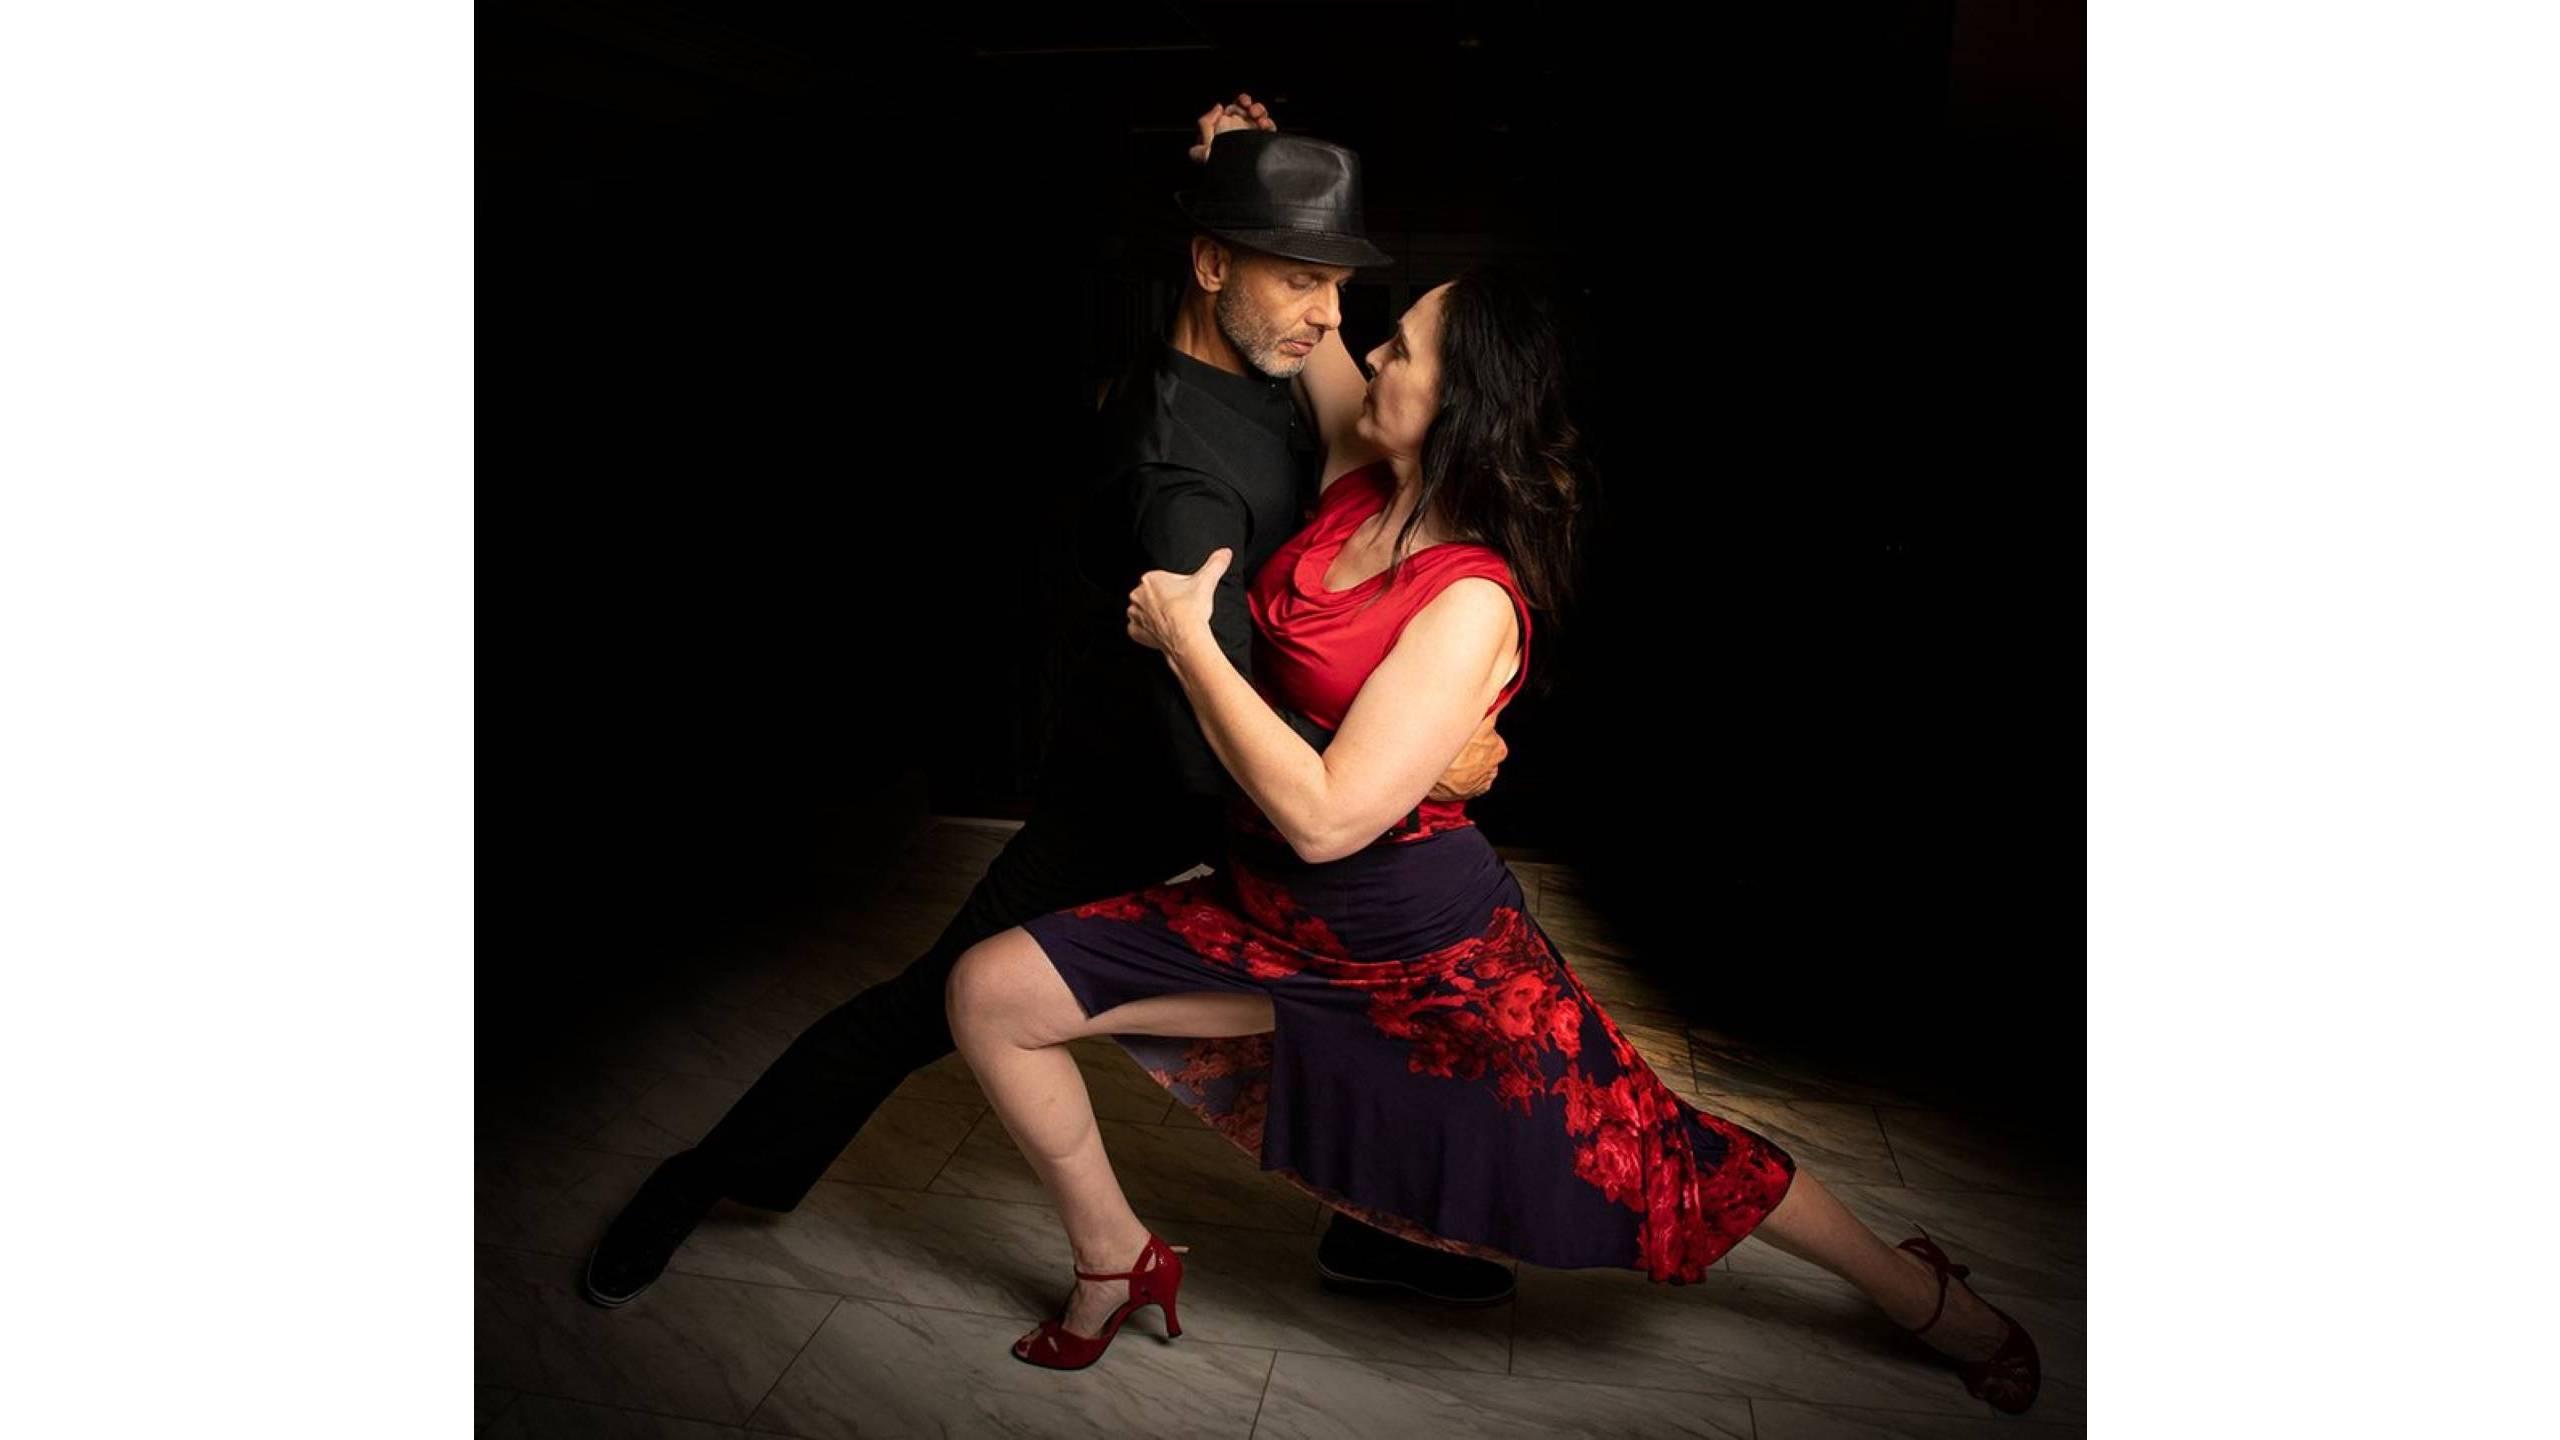 Tango instructors Fuad Elhage and Stephanie Lynn